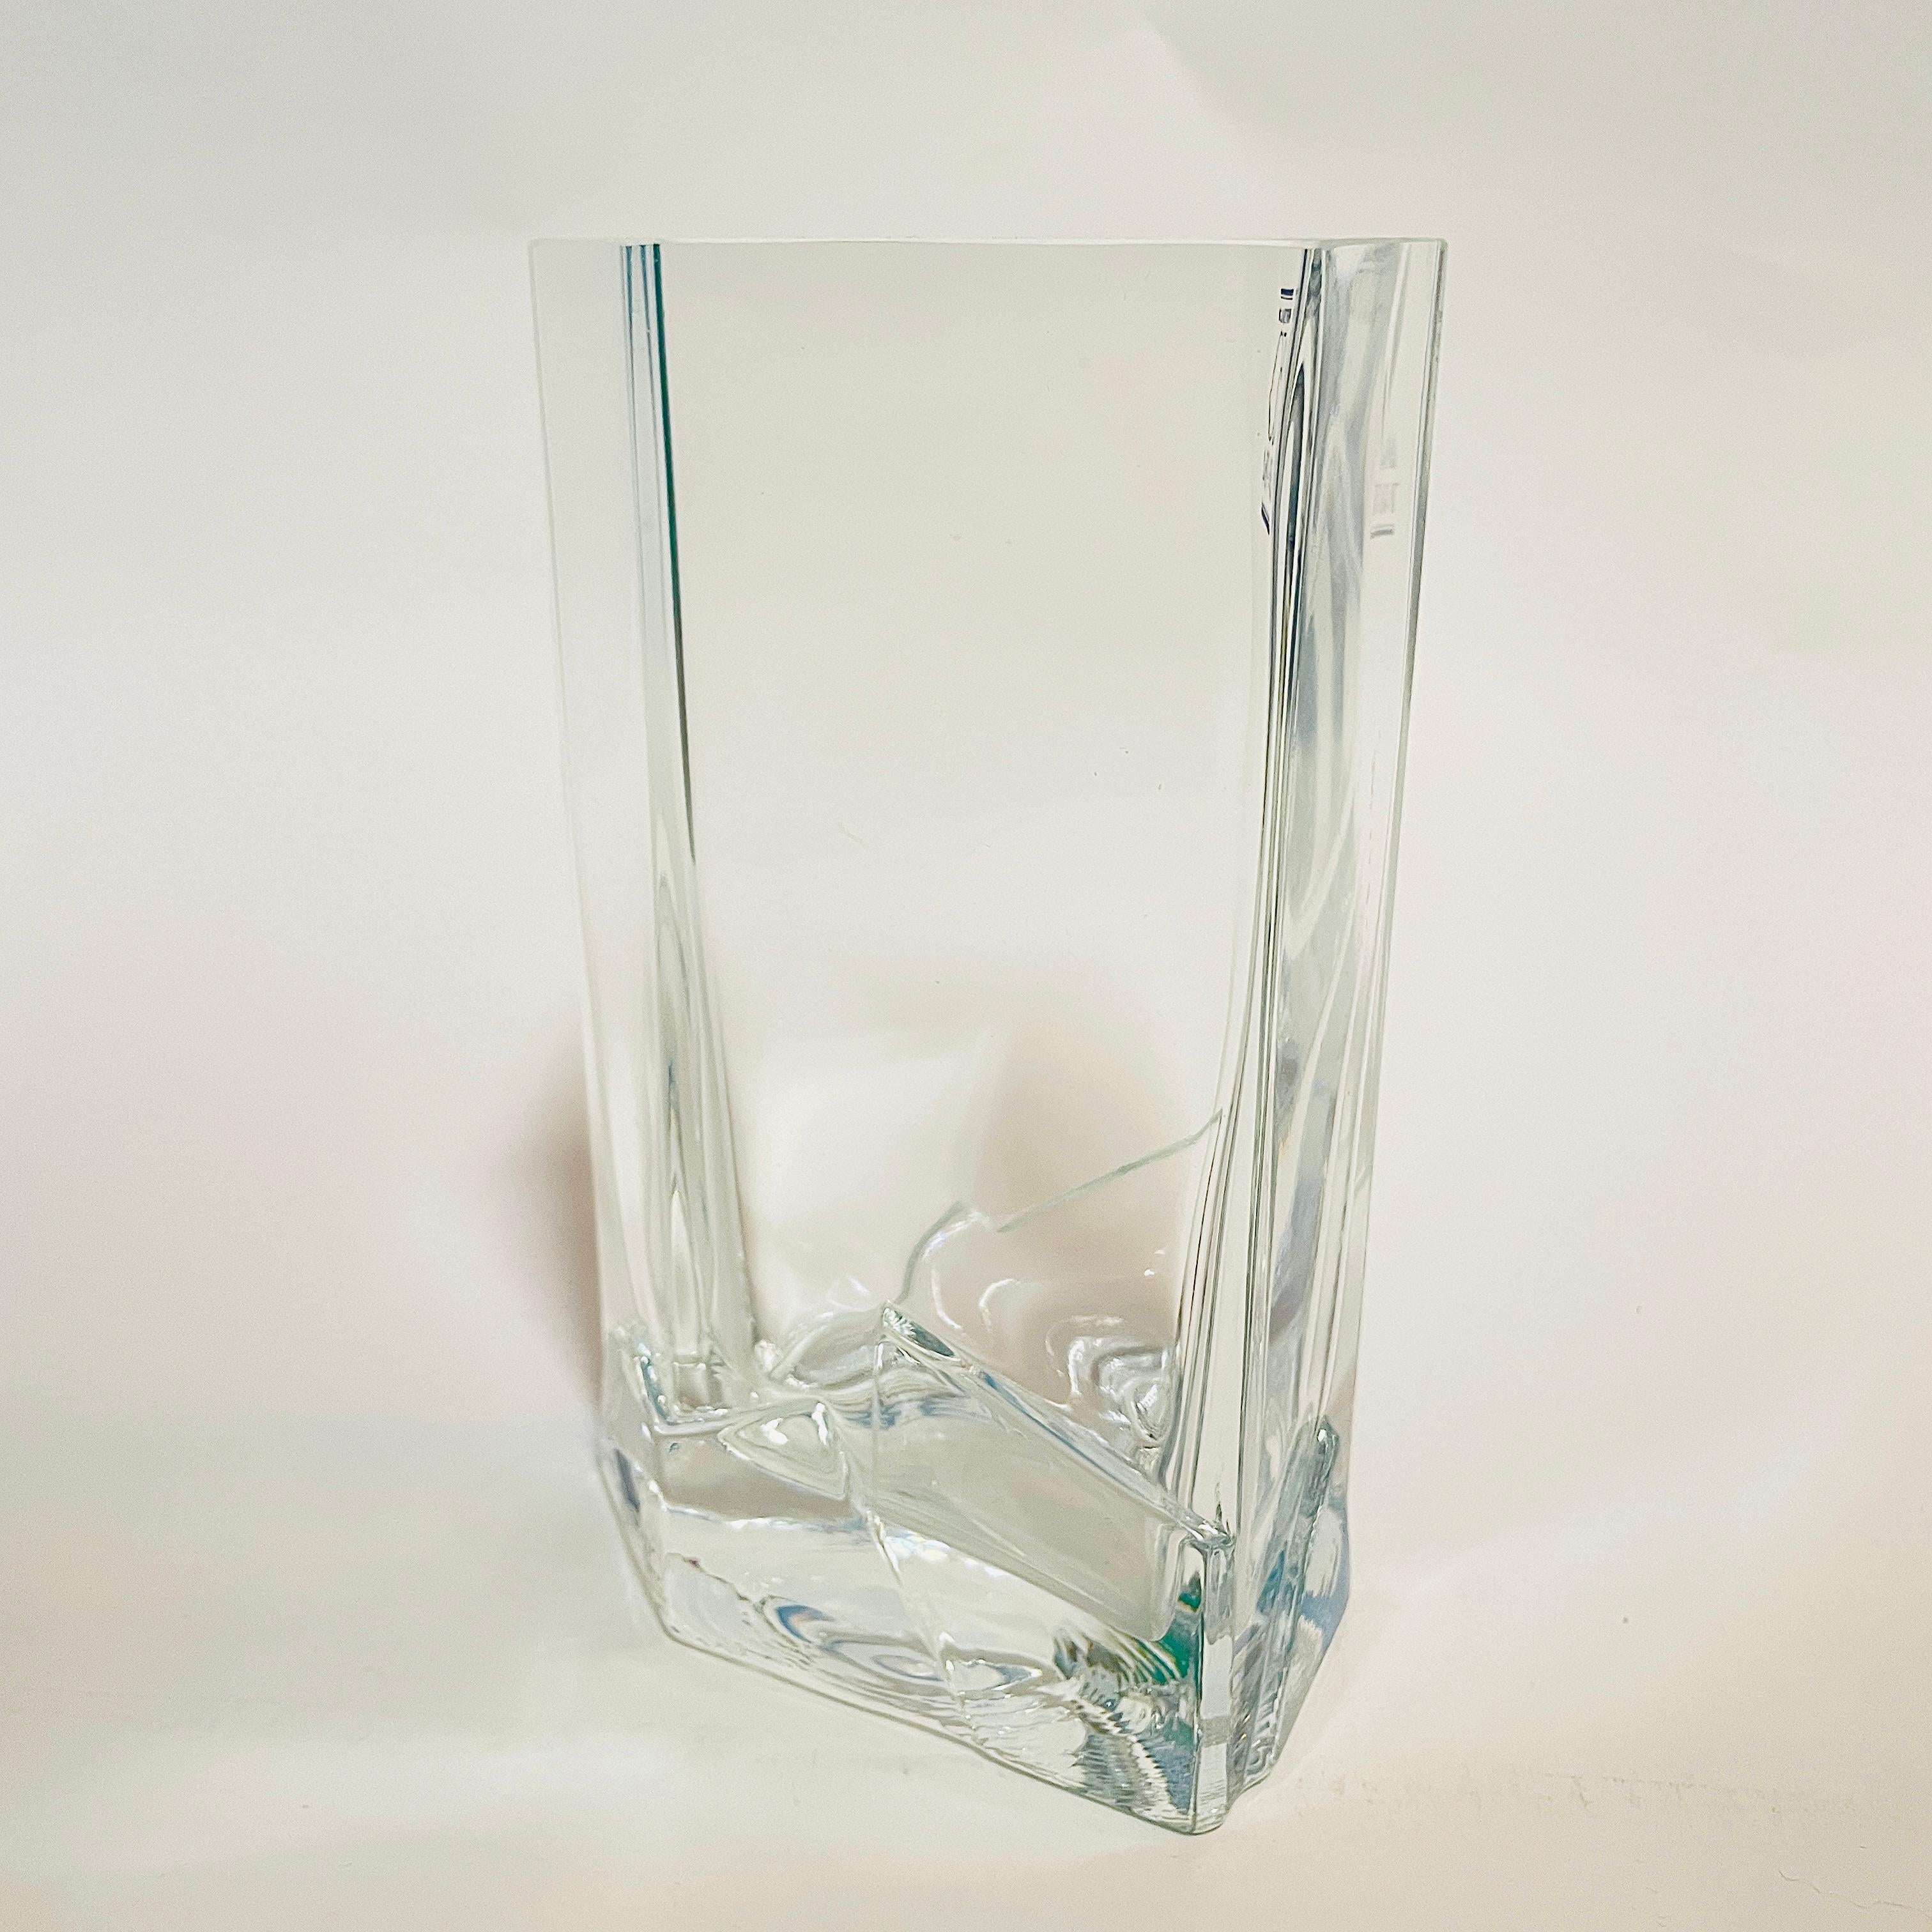 Die Vase der Glashütte Nuutajärvi wurde 1984 von Pauli Partanen entworfen. Die Glasvase wurde zu Ehren des 150-jährigen Bestehens des finnischen Unternehmens Wärtsilä eingeführt.

Die Vase Simply & Stylish ist aus mundgeblasenem Klarglas